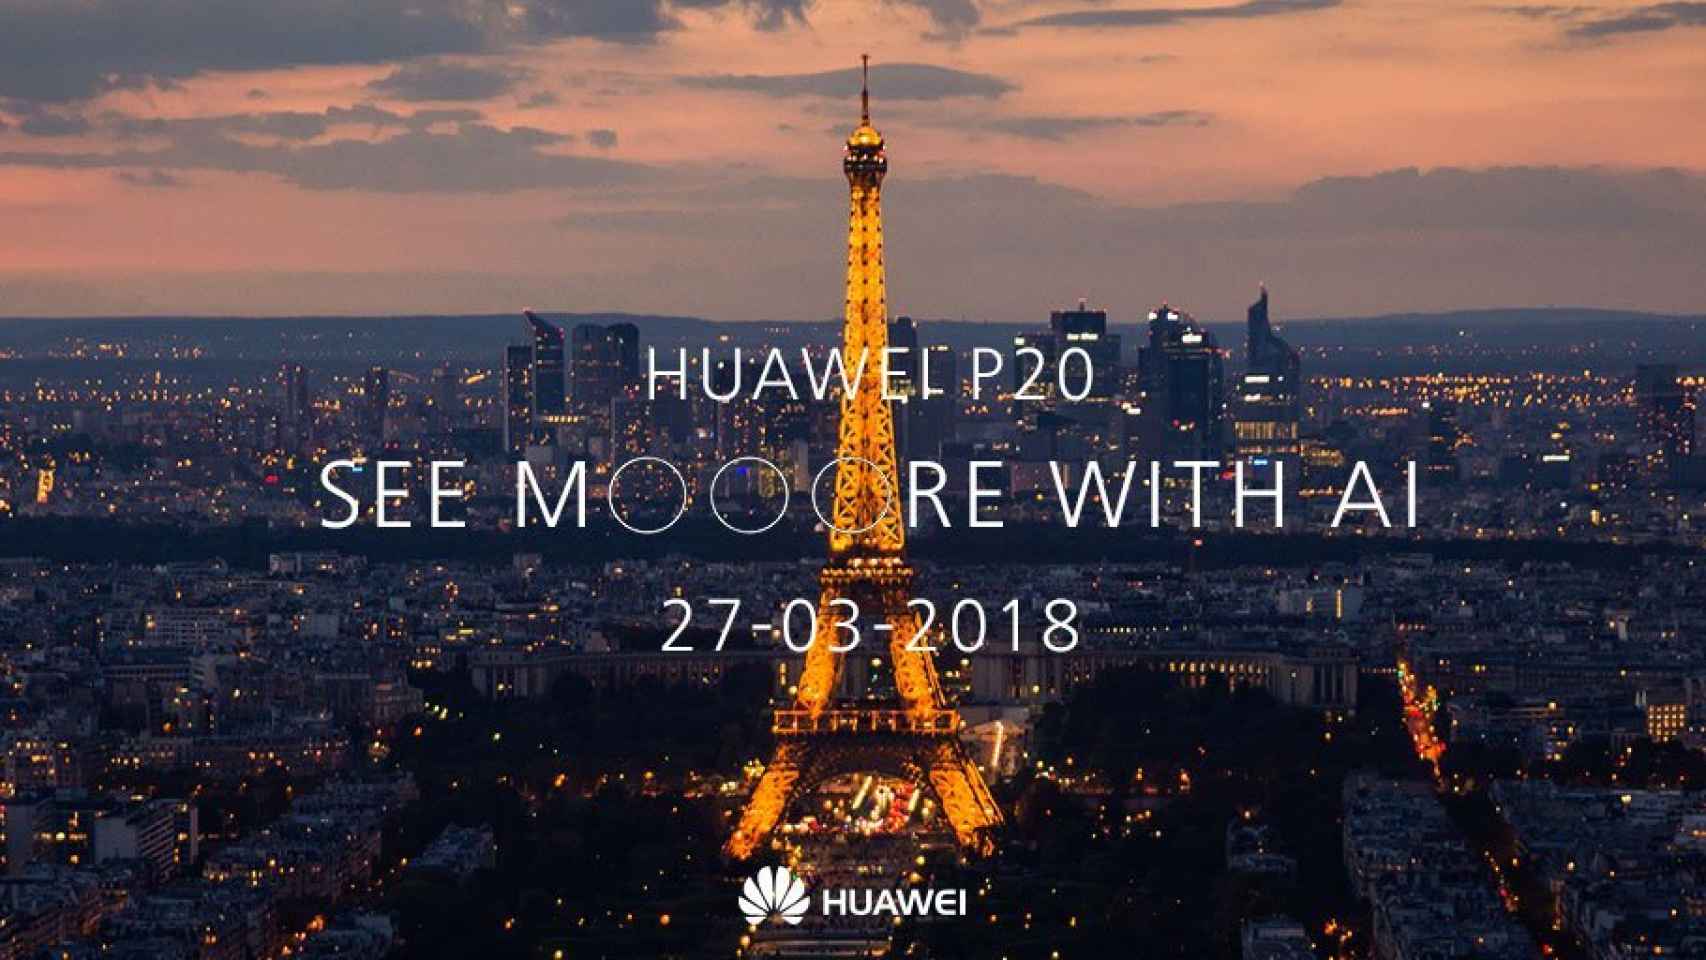 El Huawei P20 mejorará la fotografía nocturna con inteligencia artificial